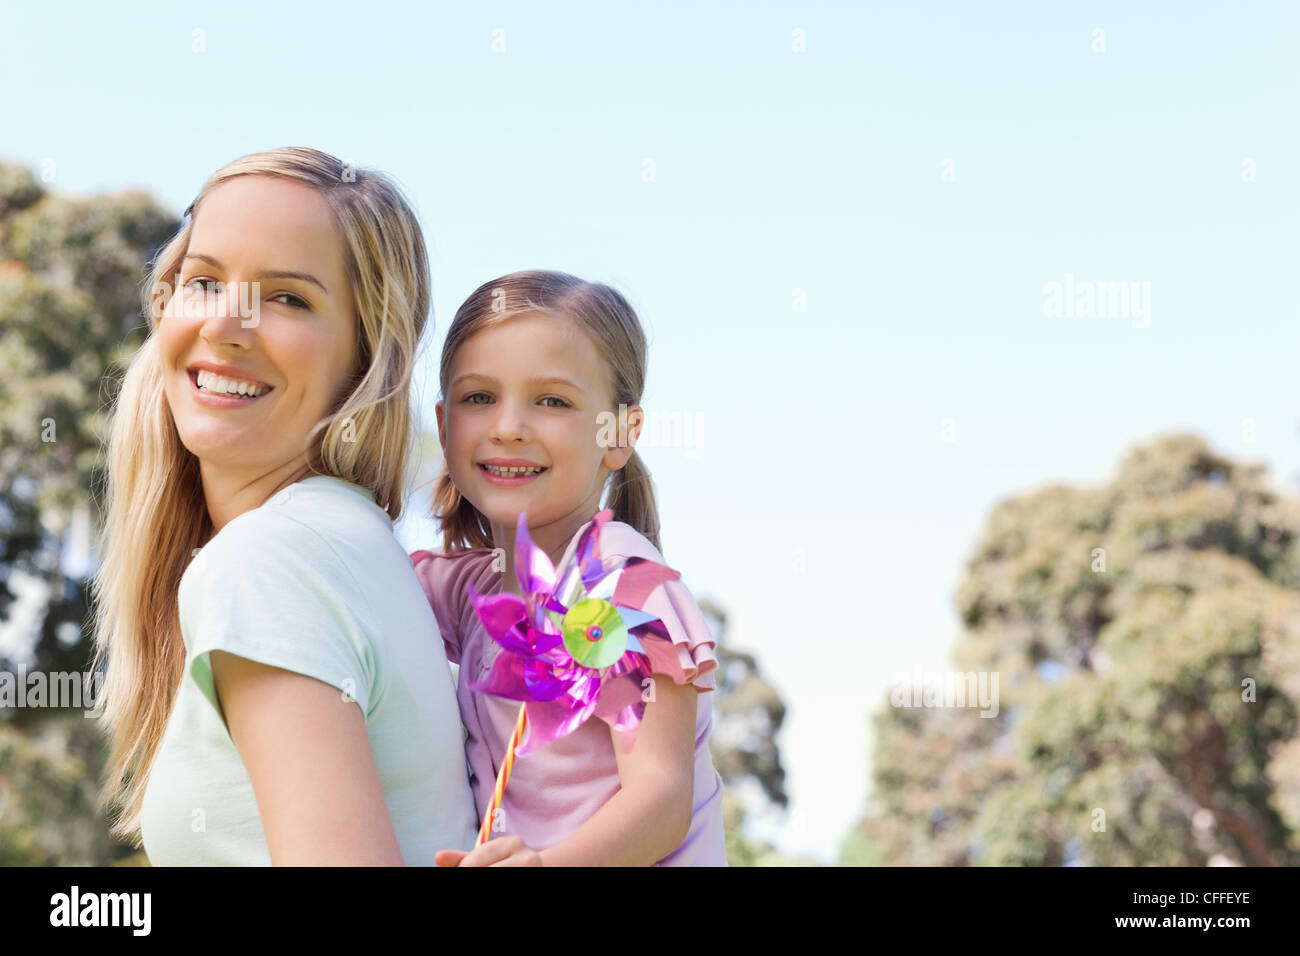 Eine lächelnde Mutter und Tochter mit einem Pin-Rad in der hand Stockfoto